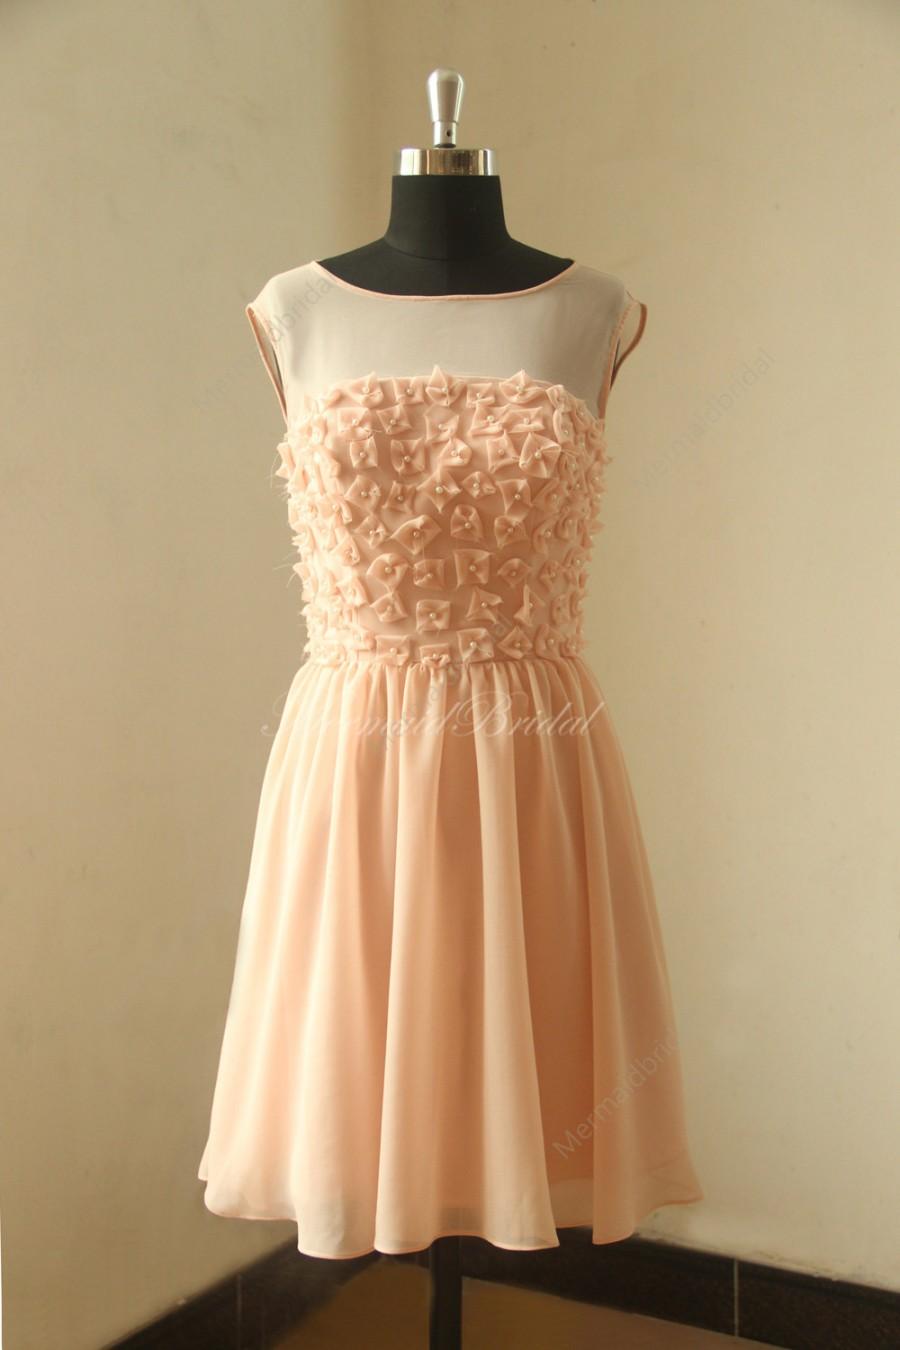 زفاف - Blush pink chiffon bridesmaid dress with pearls